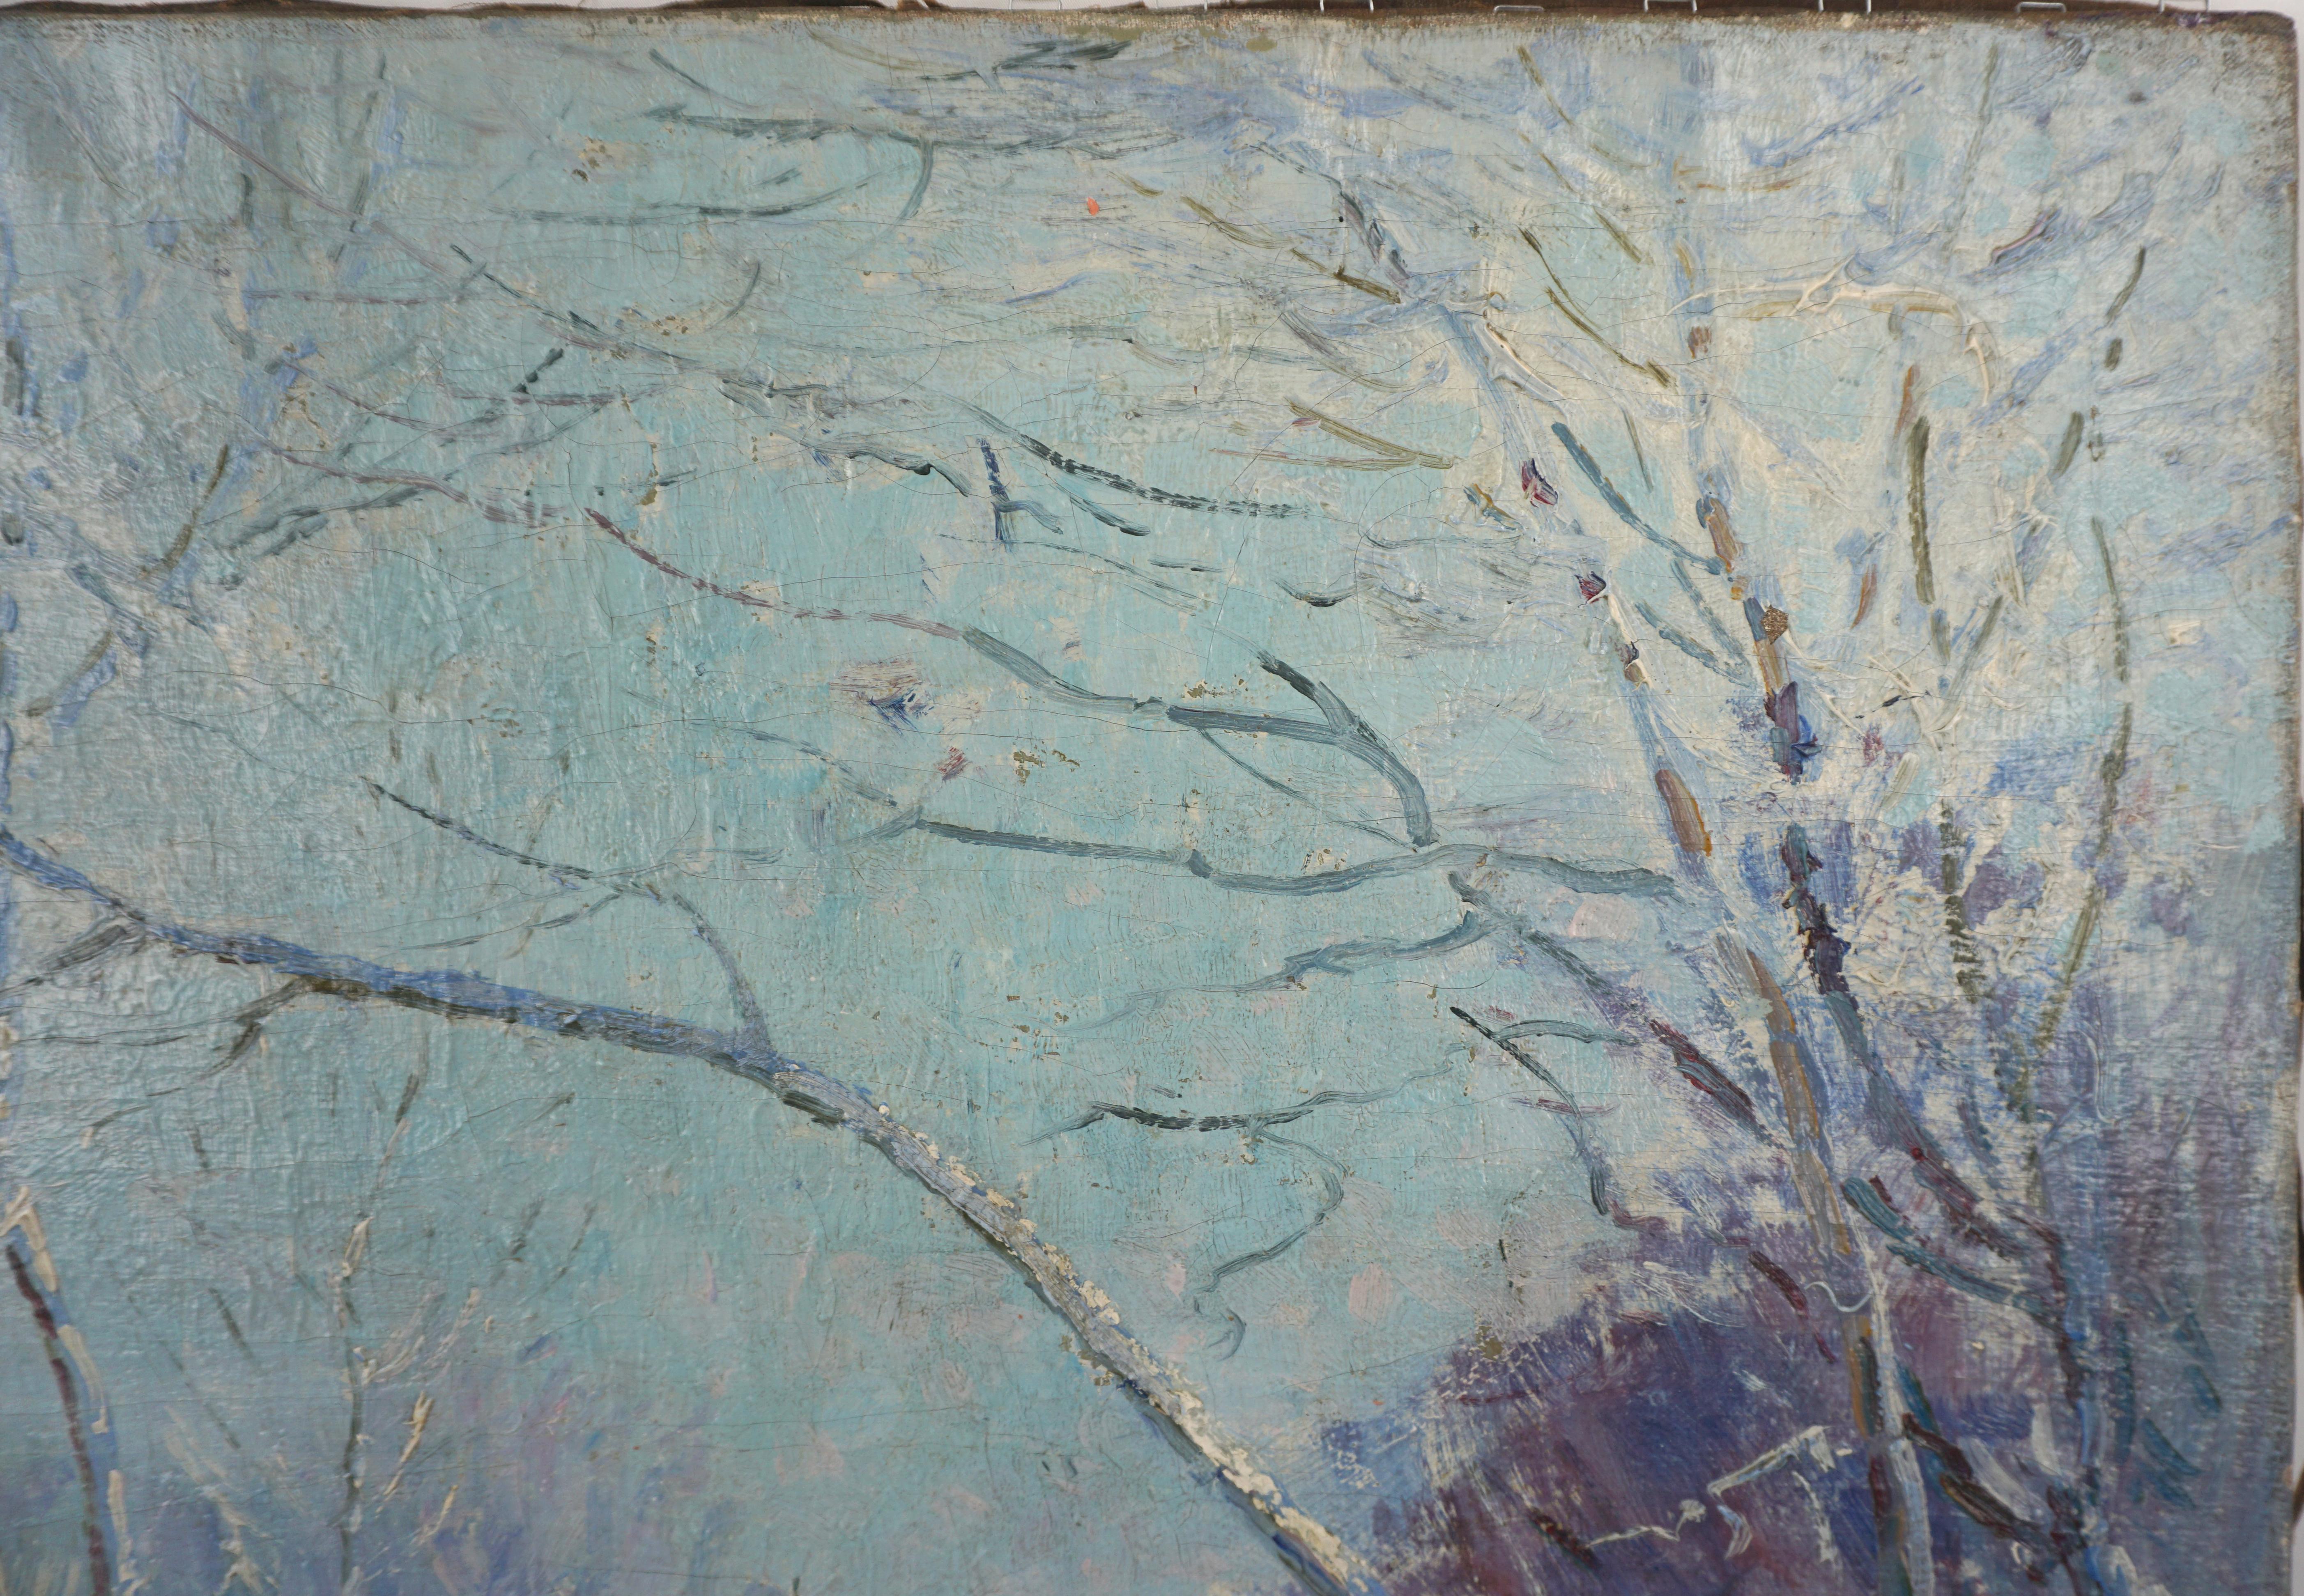 Paysage impressionniste américain du début du 20e siècle - Paysage de Chicago givré - Impressionnisme américain Painting par Henning Ryden